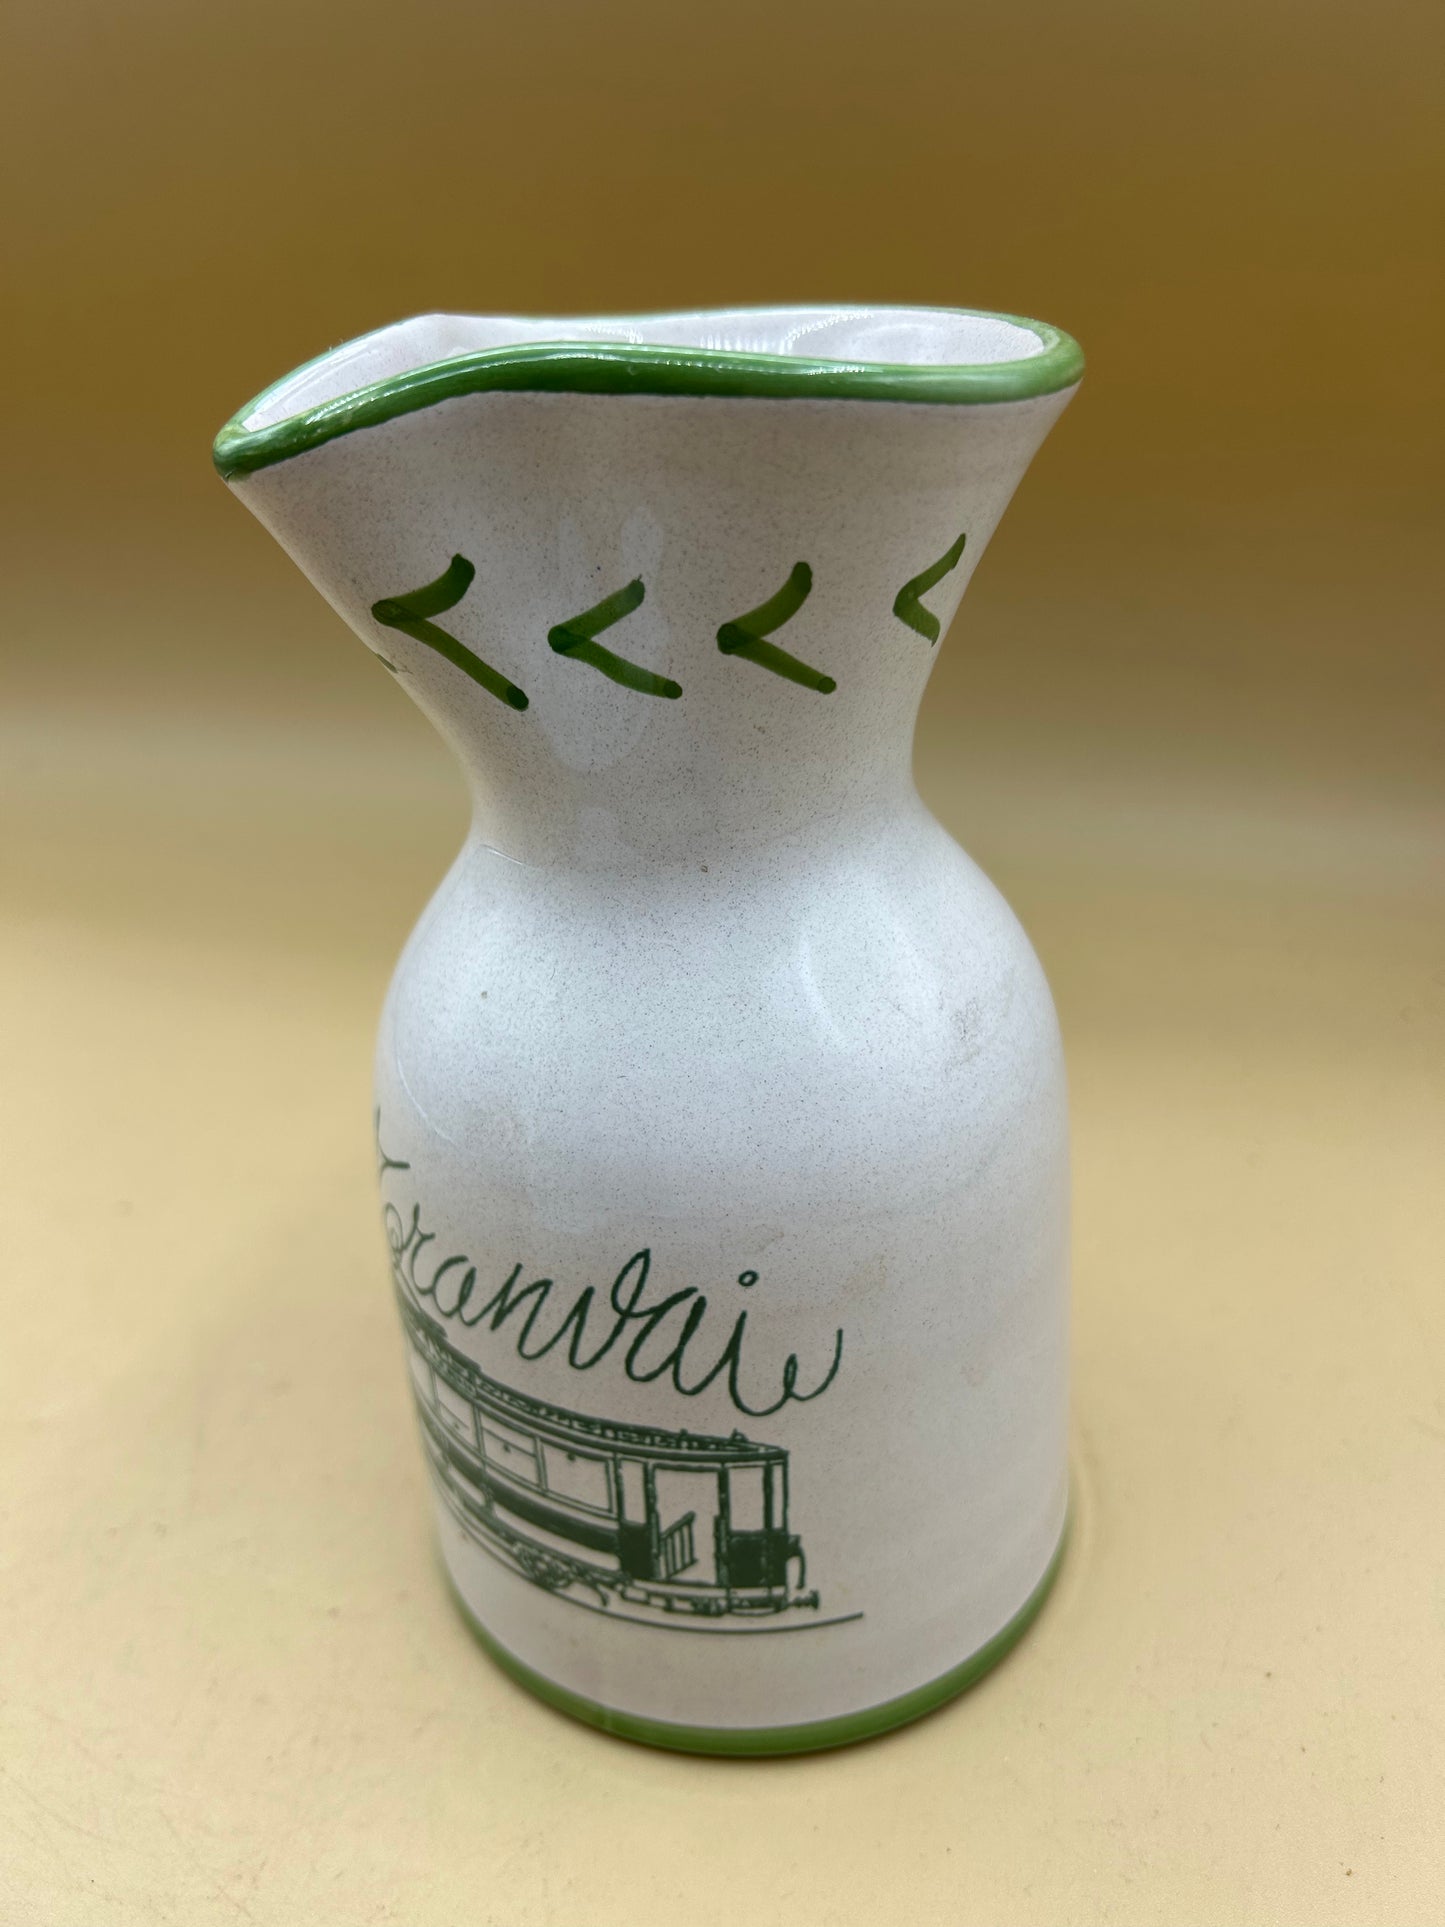 Brocca in ceramica Tramvai Torretti Deruta dipinta a mano bottiglia per acqua o vino con disegno di tram